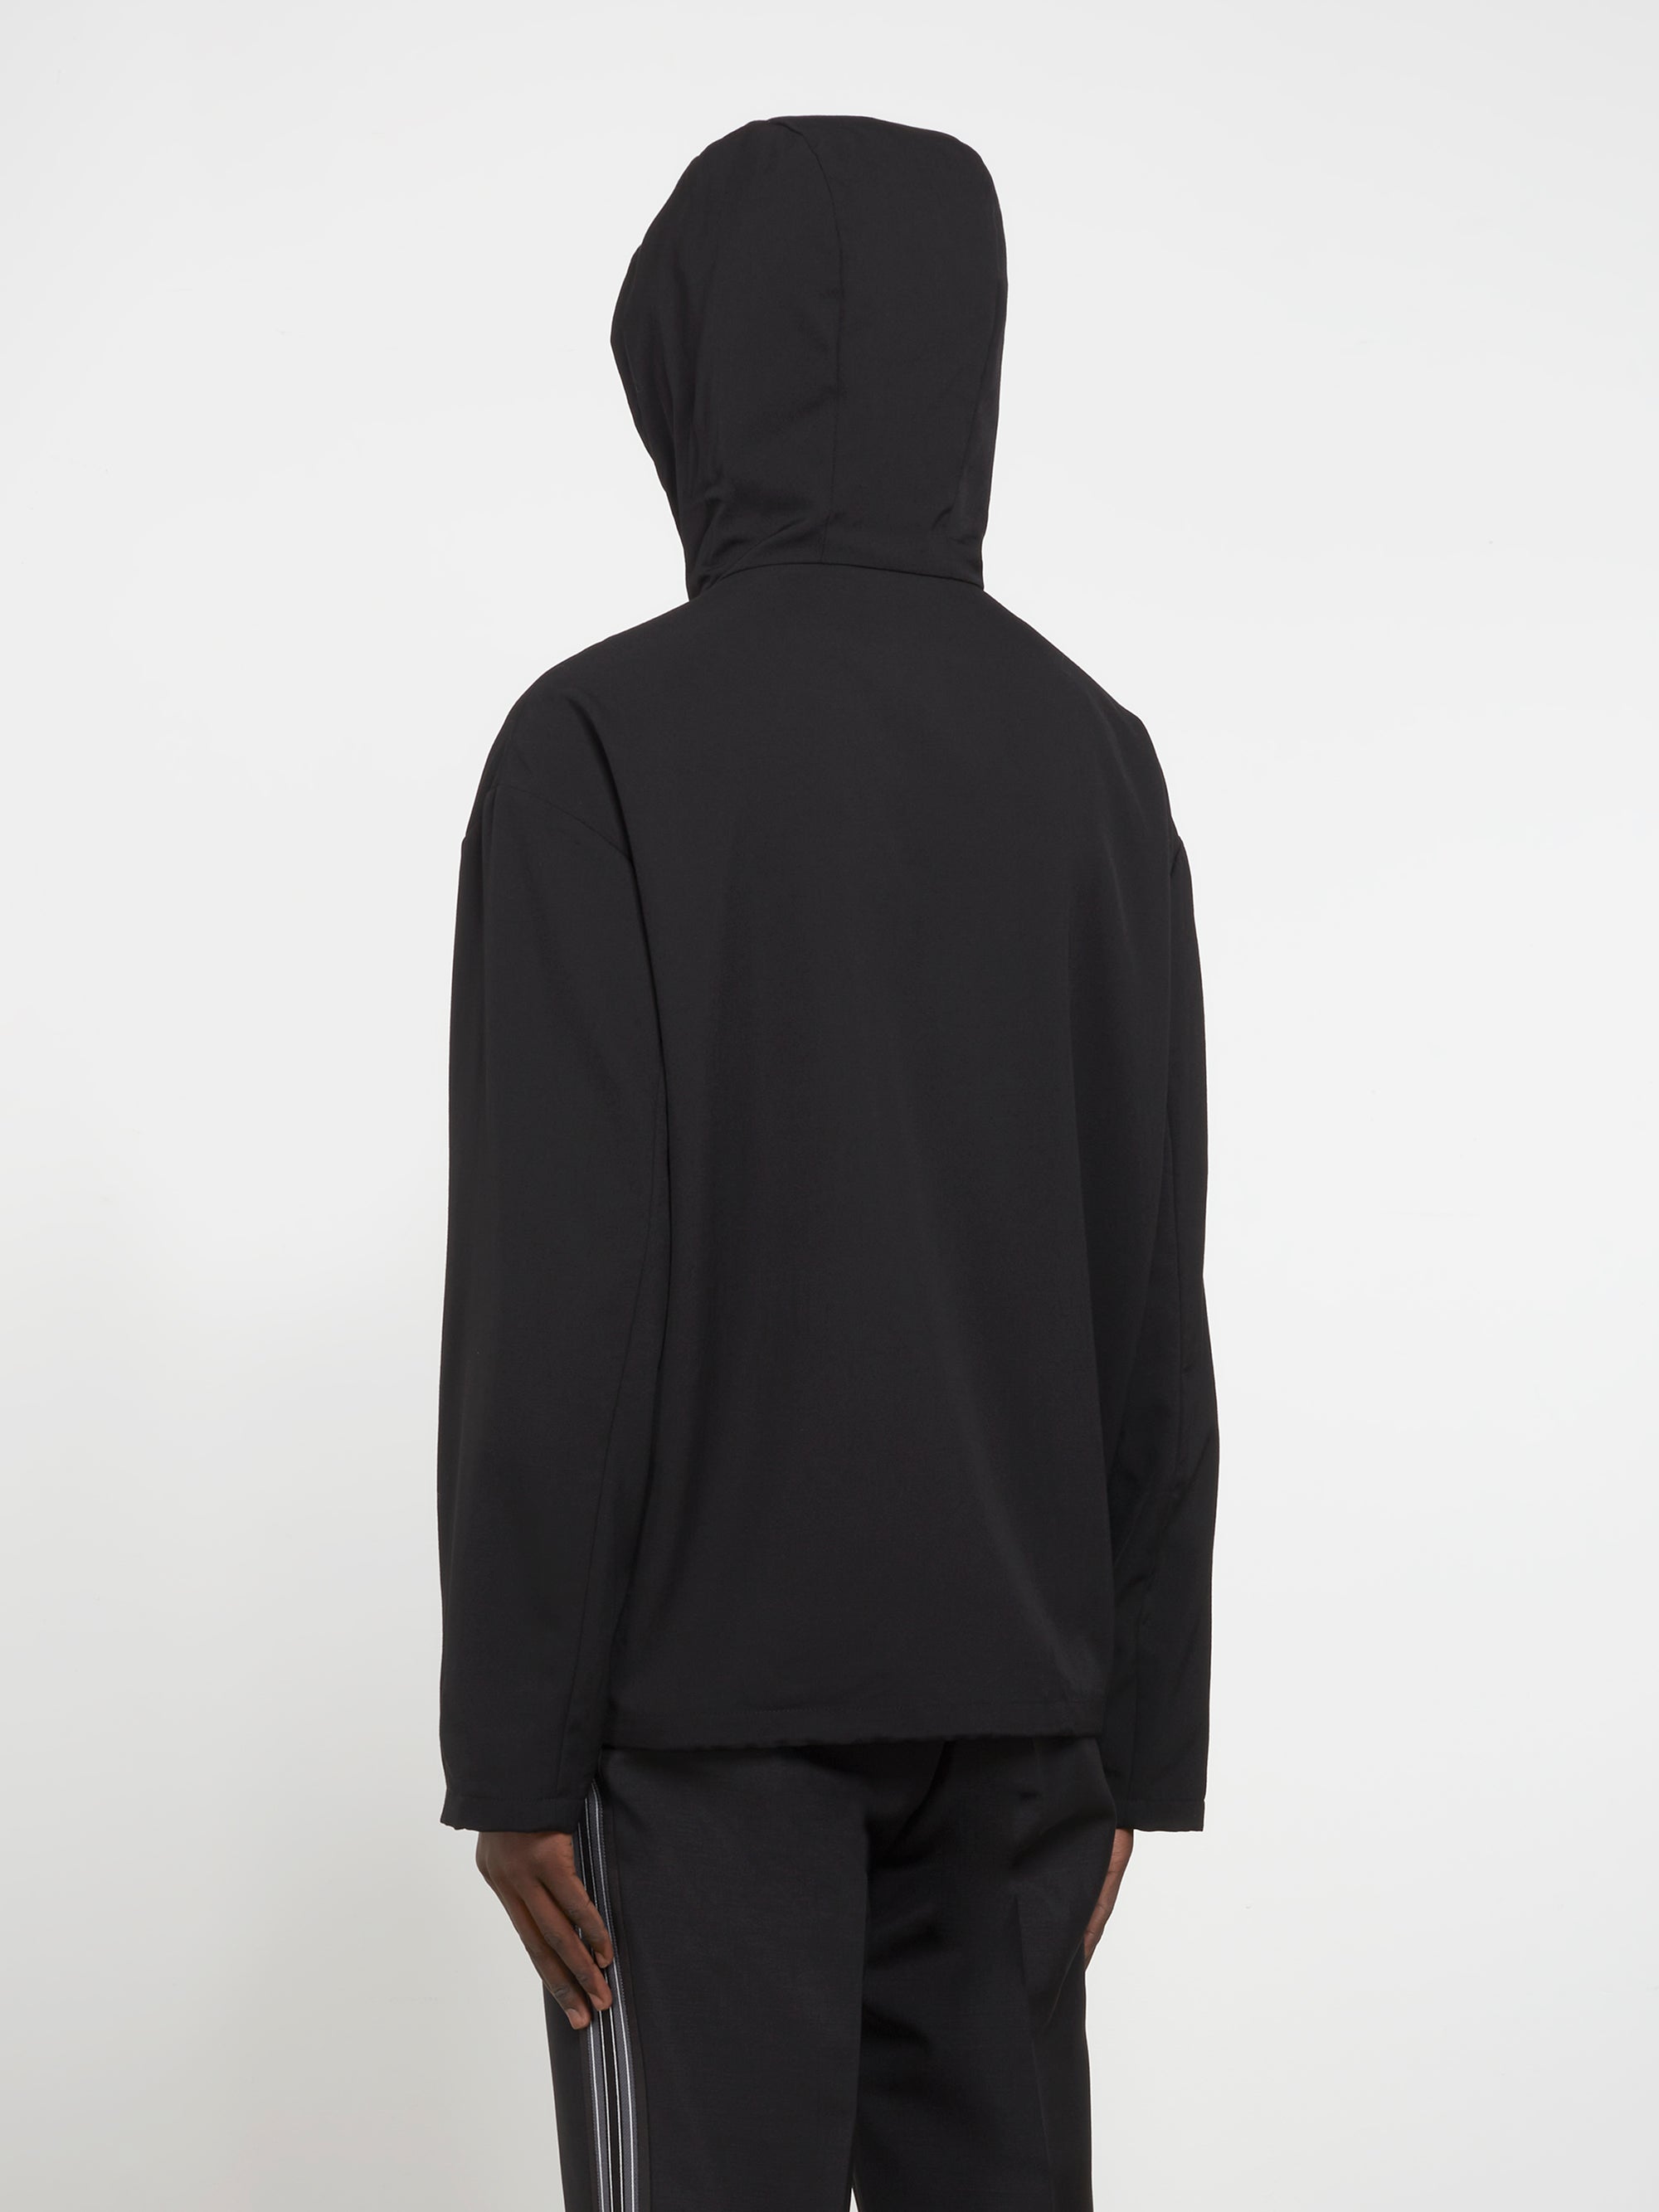 Prada - Men’s Hooded Wool Jacket - (Black) view 4